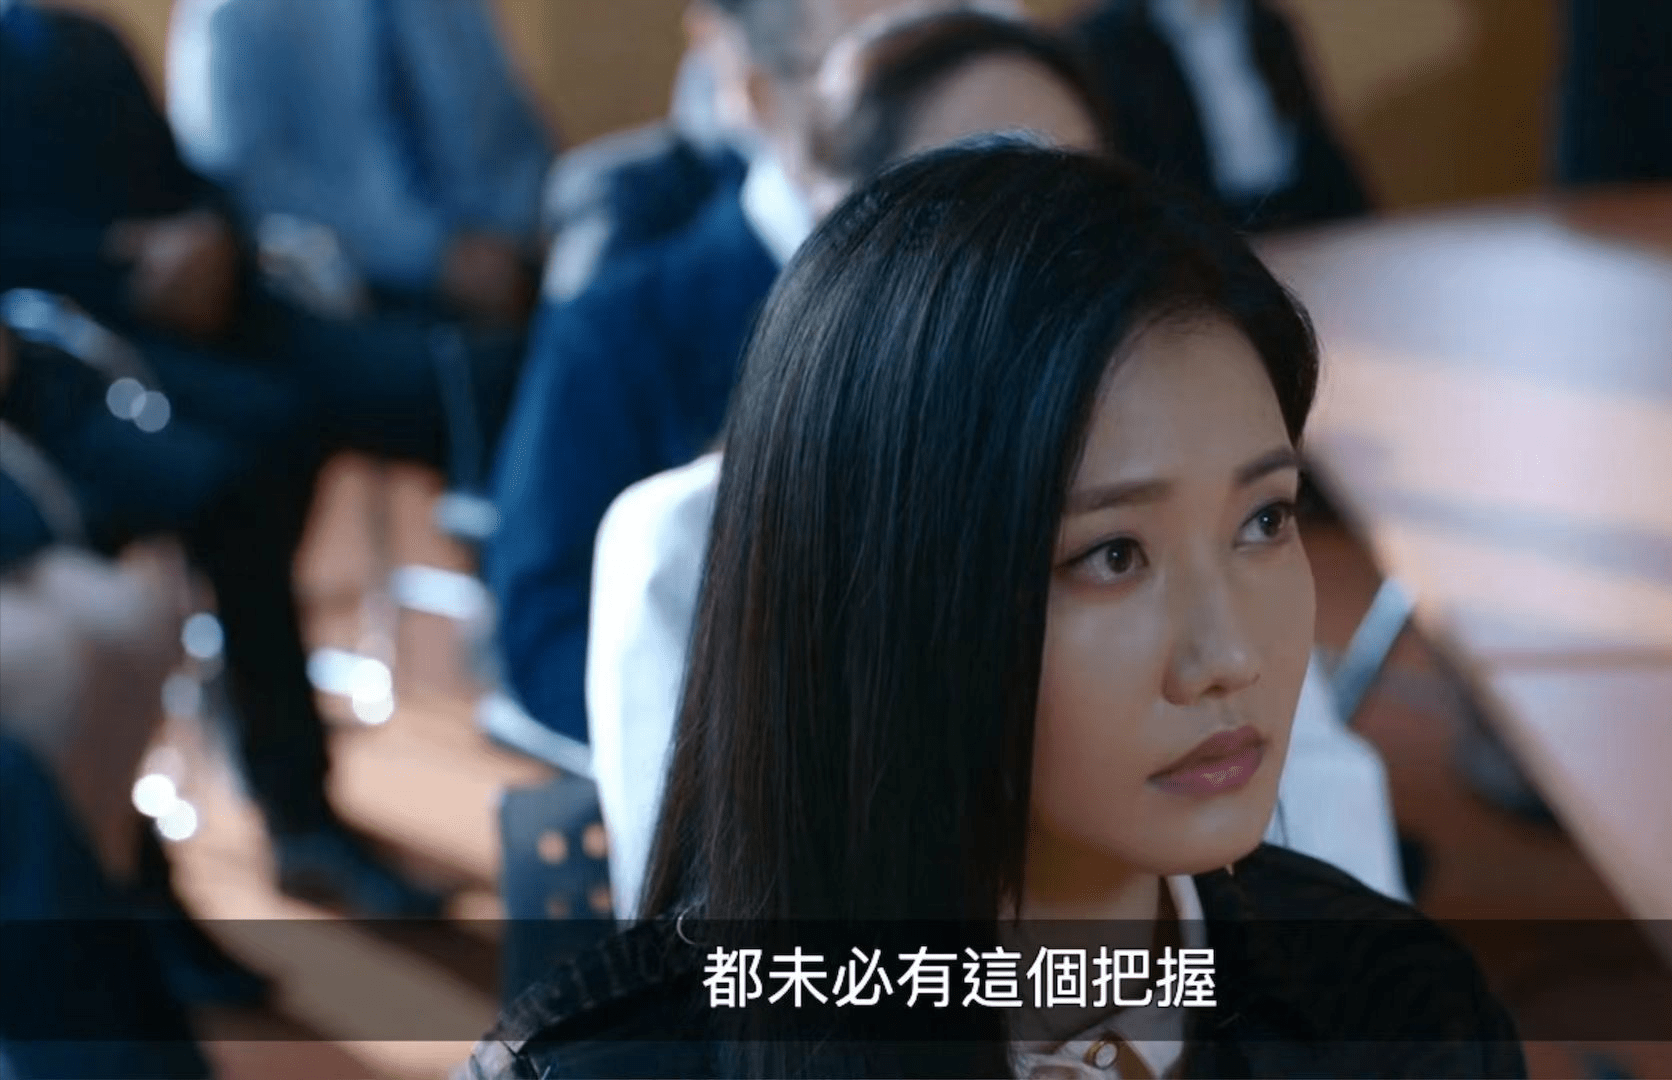 章子怡师妹刘温馨首演大奸角备受好评,为发展事业拒绝金融才俊求婚